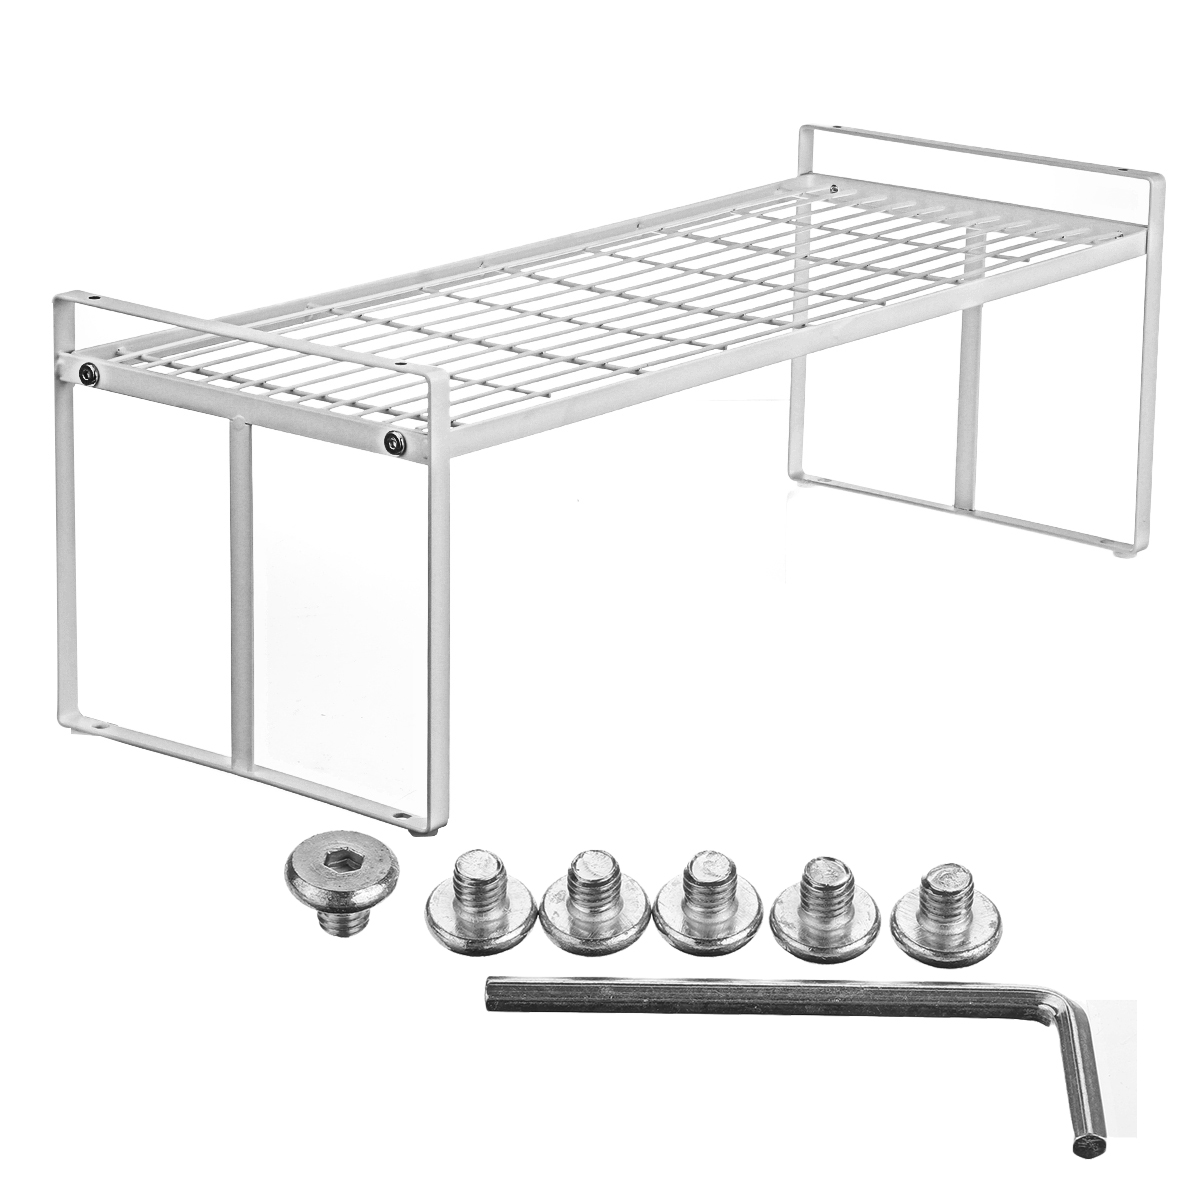 White-Standing-Rack-Kitchen-Bathroom-Countertop-Storage-Organizer-Shelf-Holder-1722152-12